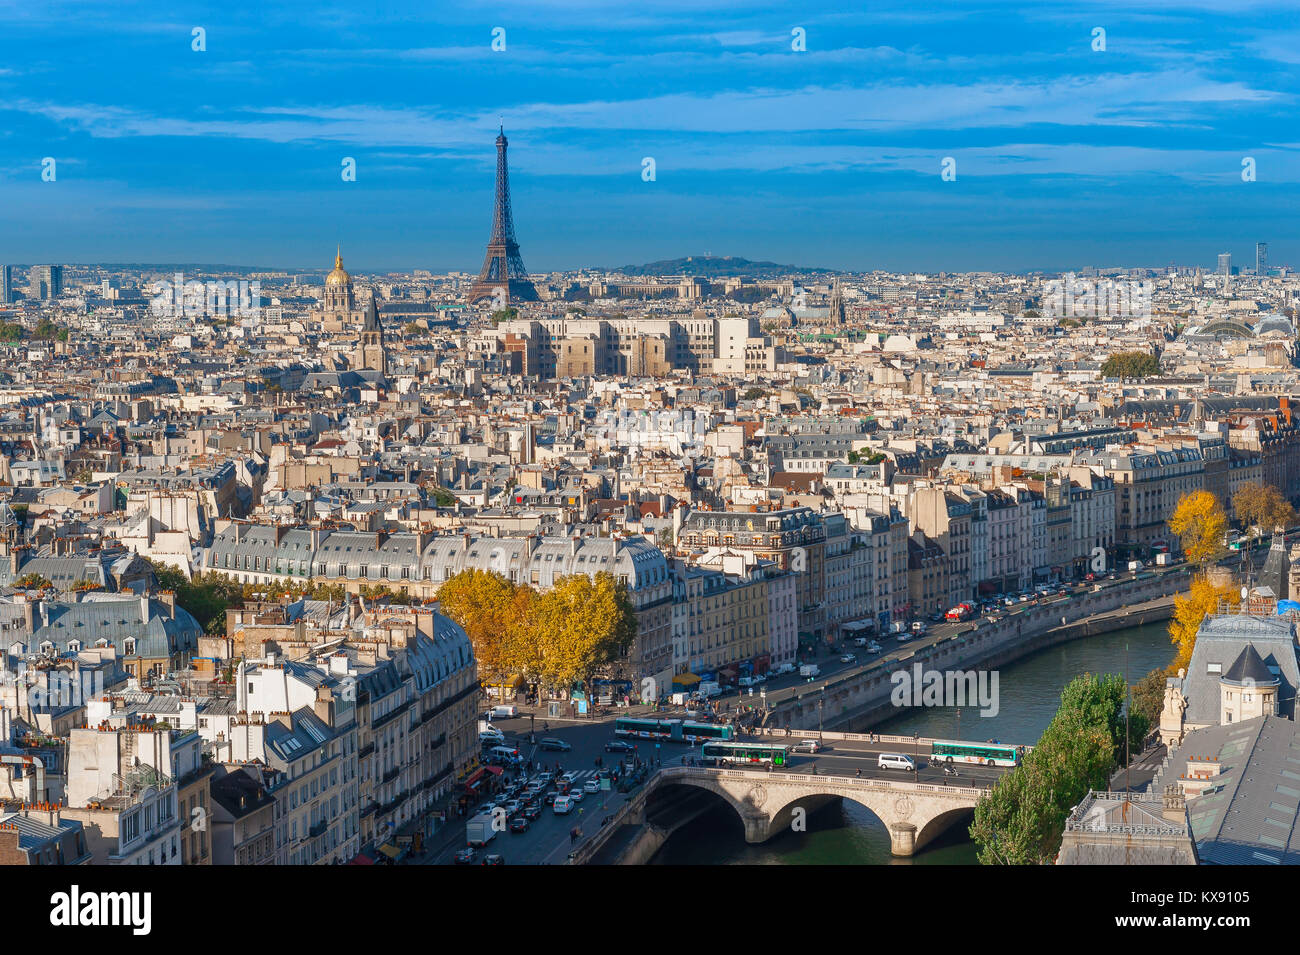 La ville de Paris, vue aérienne à l'ouest de Paris au-dessus des toits de la rive gauche en direction de la Tour Eiffel sur les toits de la ville, France. Banque D'Images